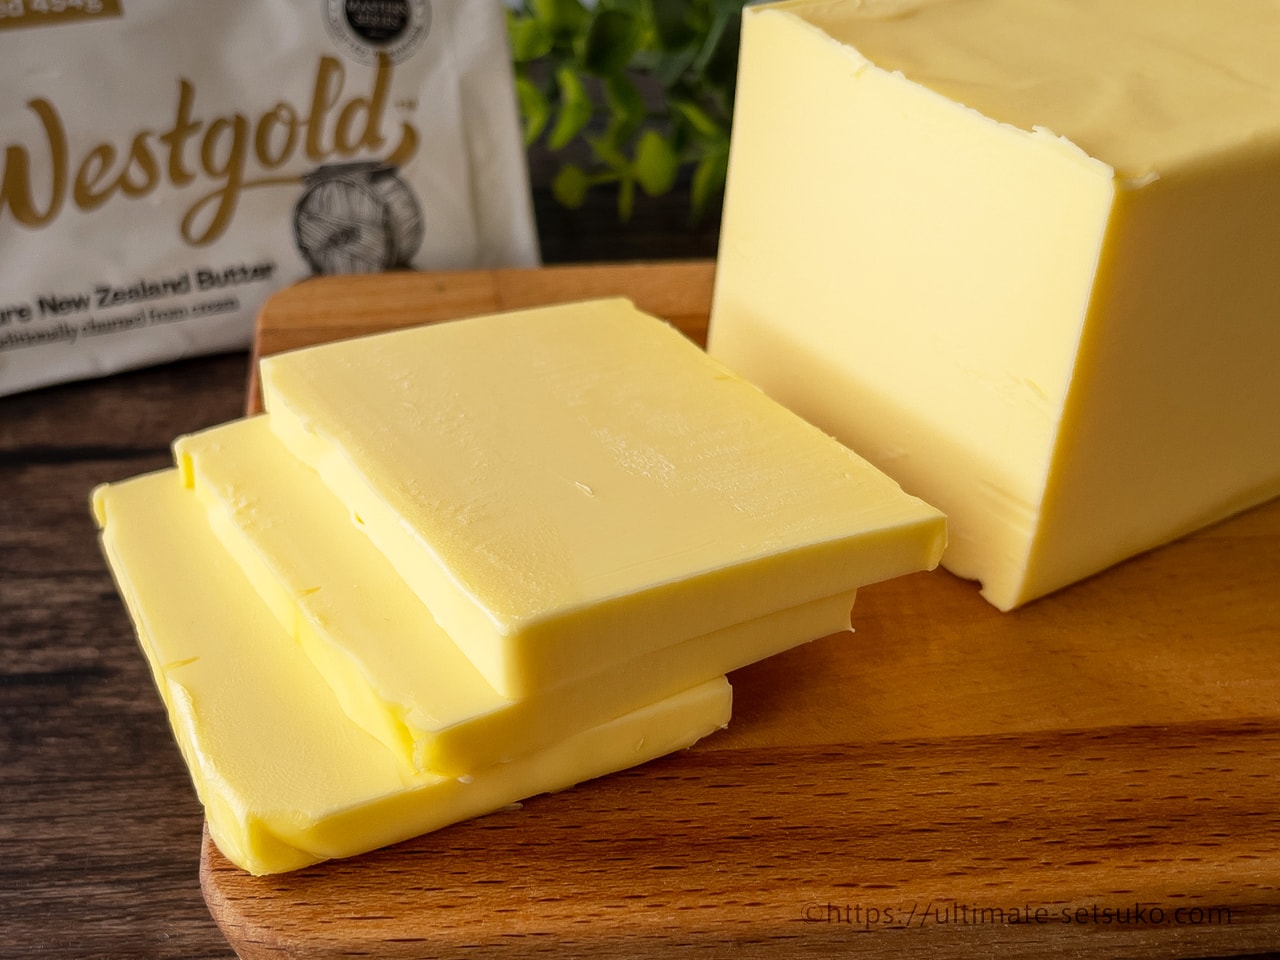 コストコ新商品のWestgold無塩バターが上品な風味で美味！酸化を防ぐ保存方法も解説